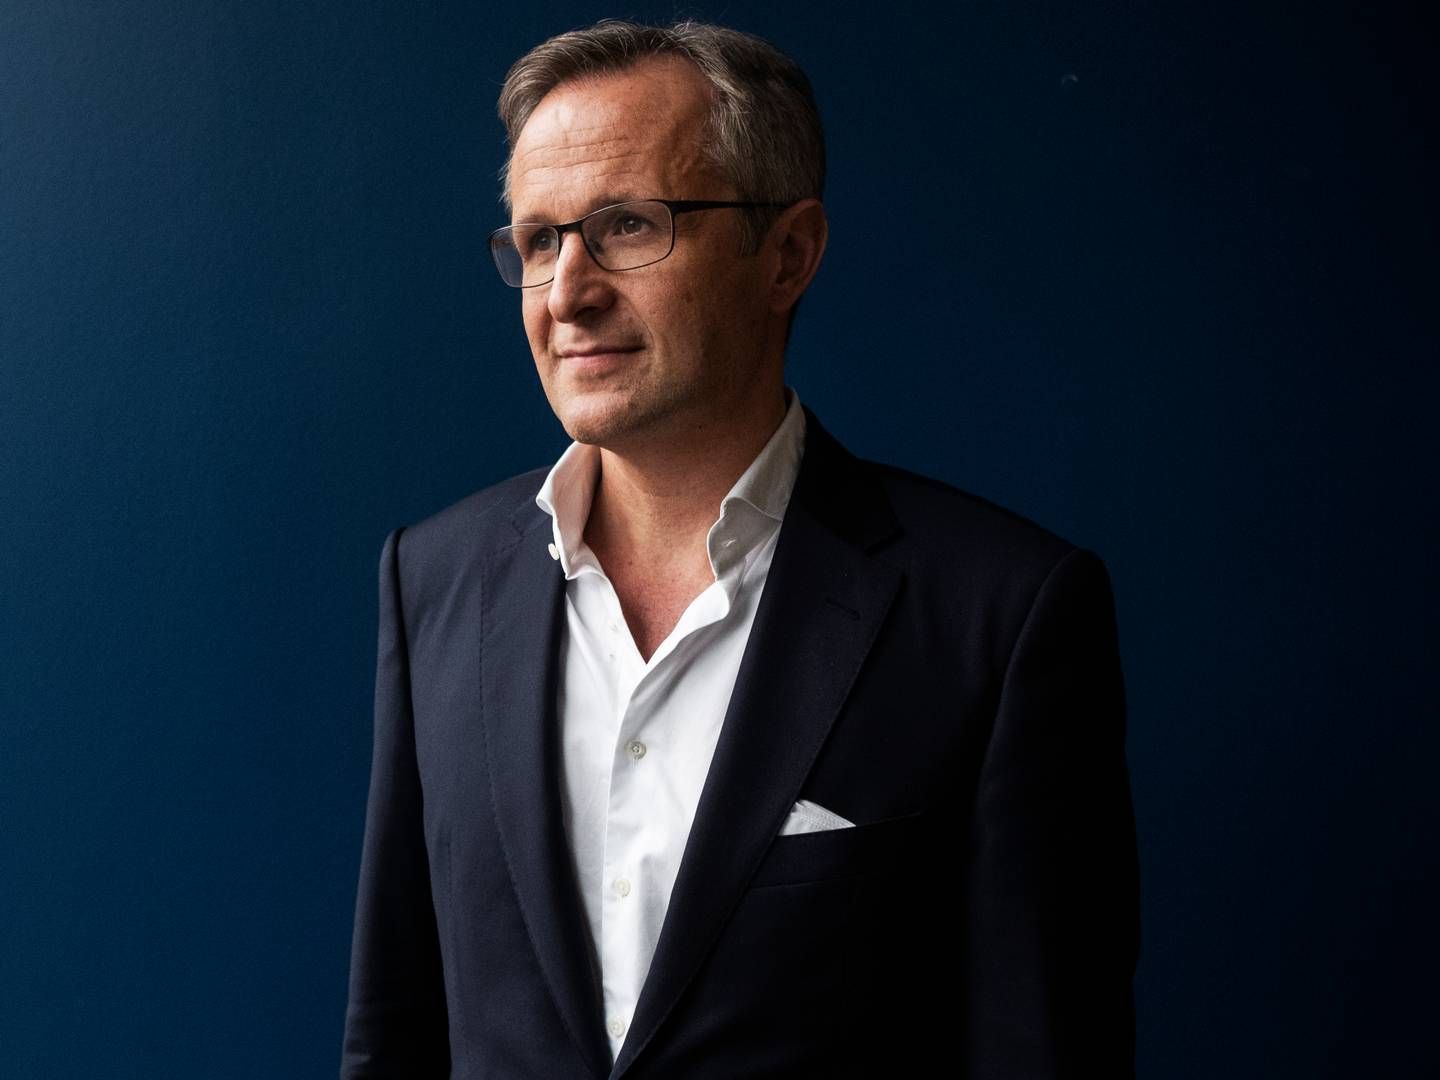 Dagrofa, som har Tomas Pietrangeli som koncernchef, vil fra 2022 til 2024 investere 1,1 mia. kr. under strategien "Fremgang Sammen". | Photo: Gregers Tycho